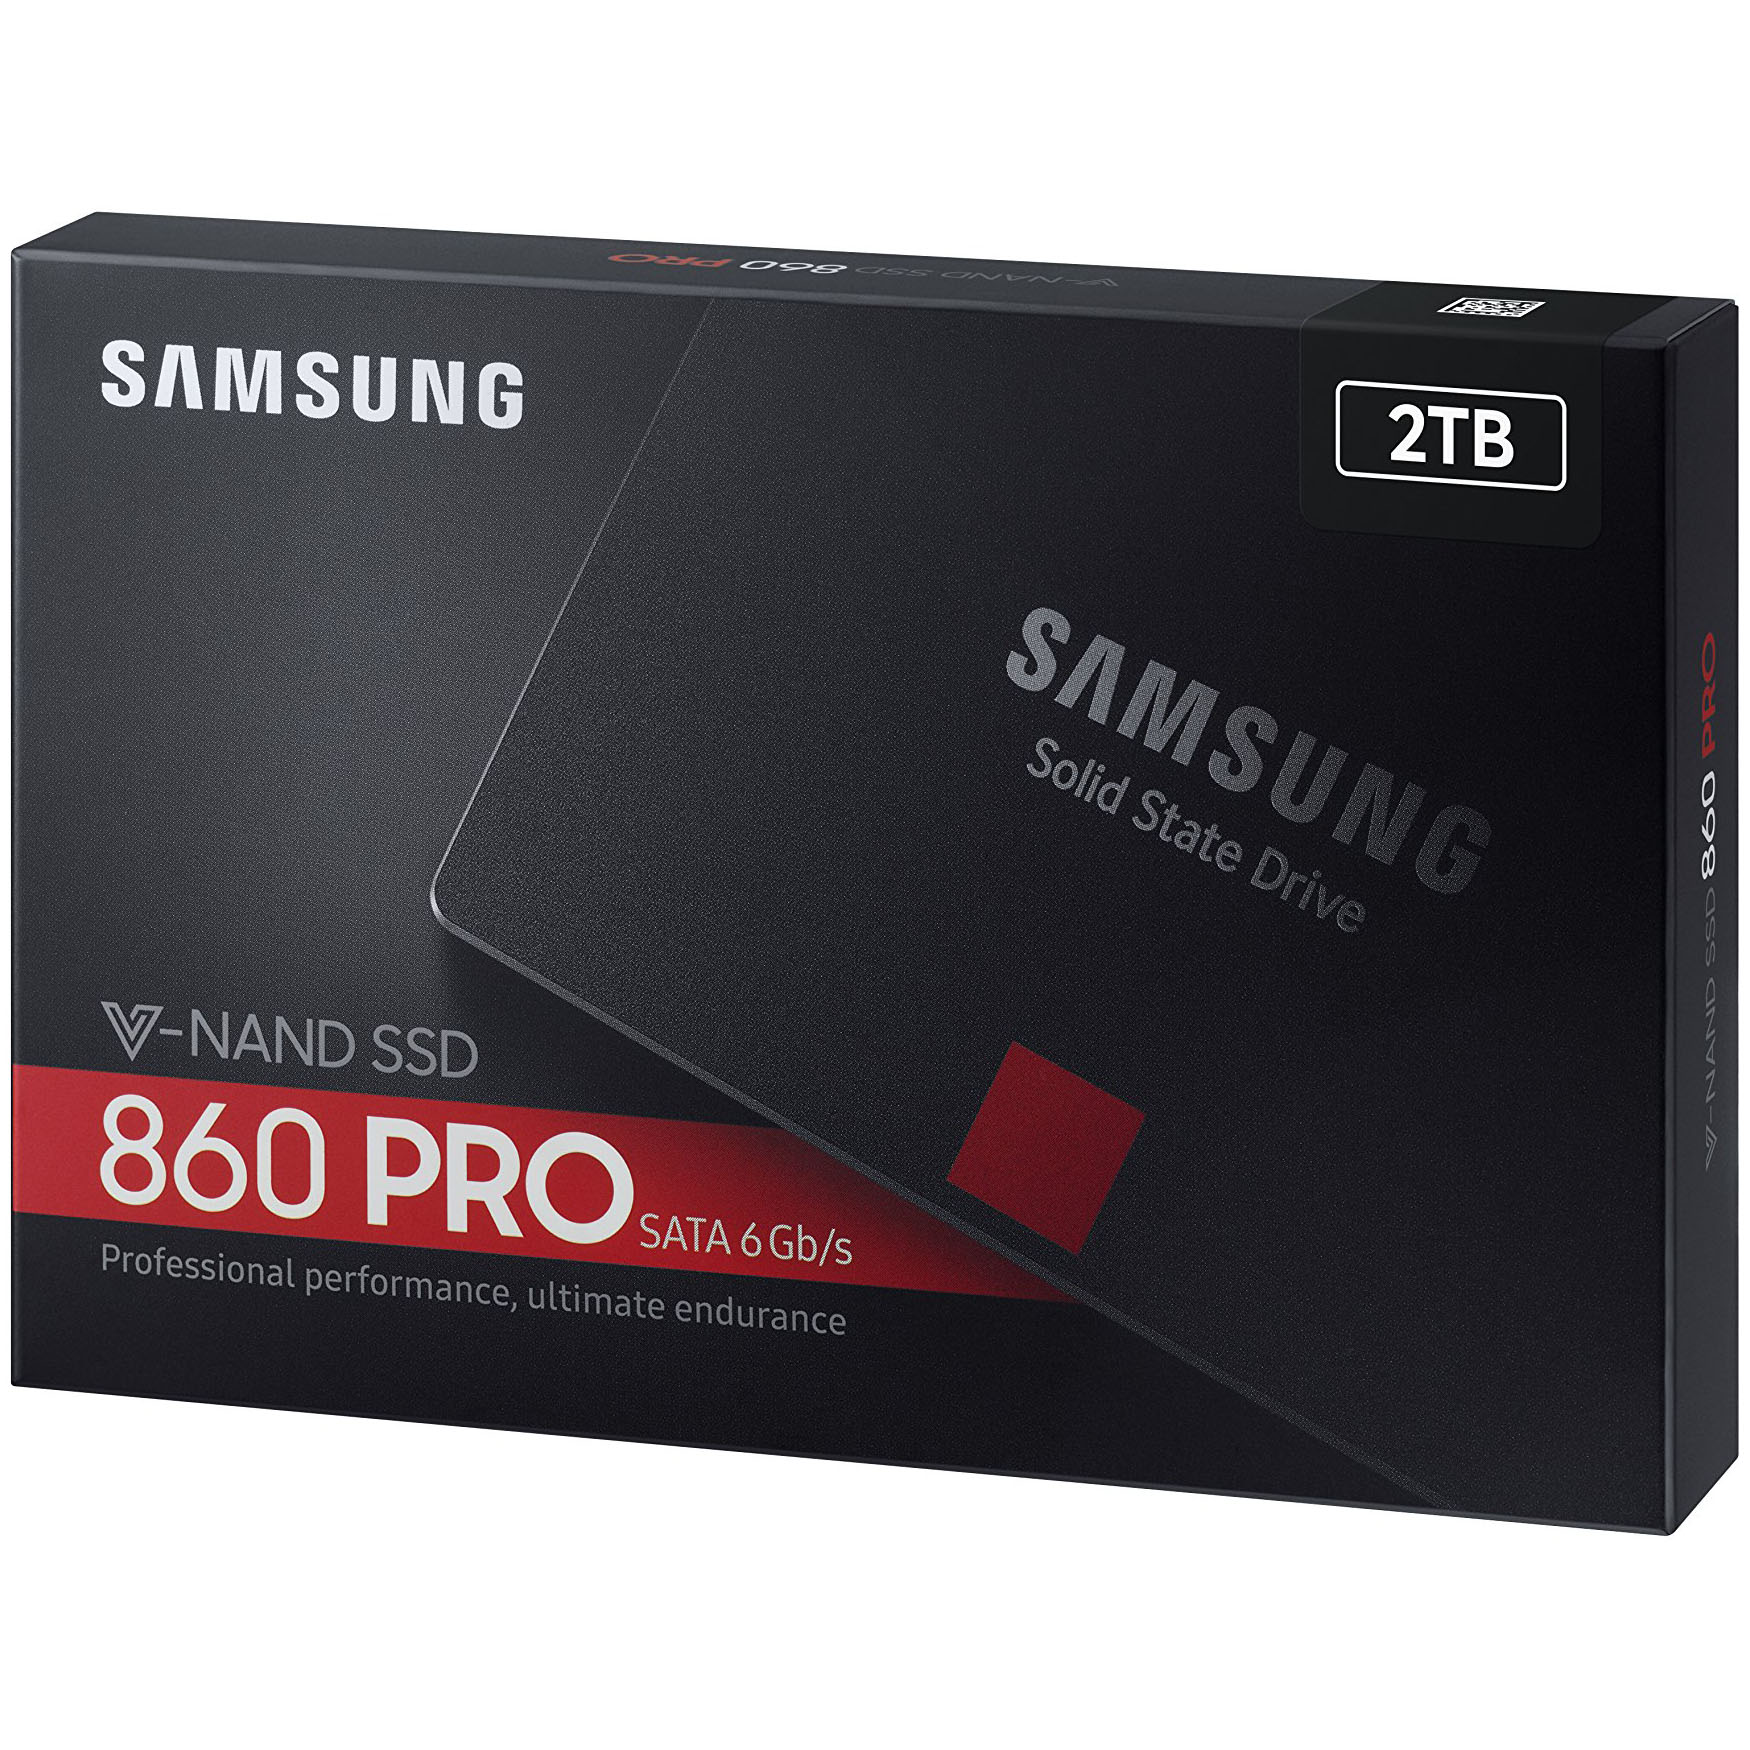 Ổ Cứng SSD Samsung 860 Pro 2TB Sata III 2.5 inch - Hàng Nhập Khẩu